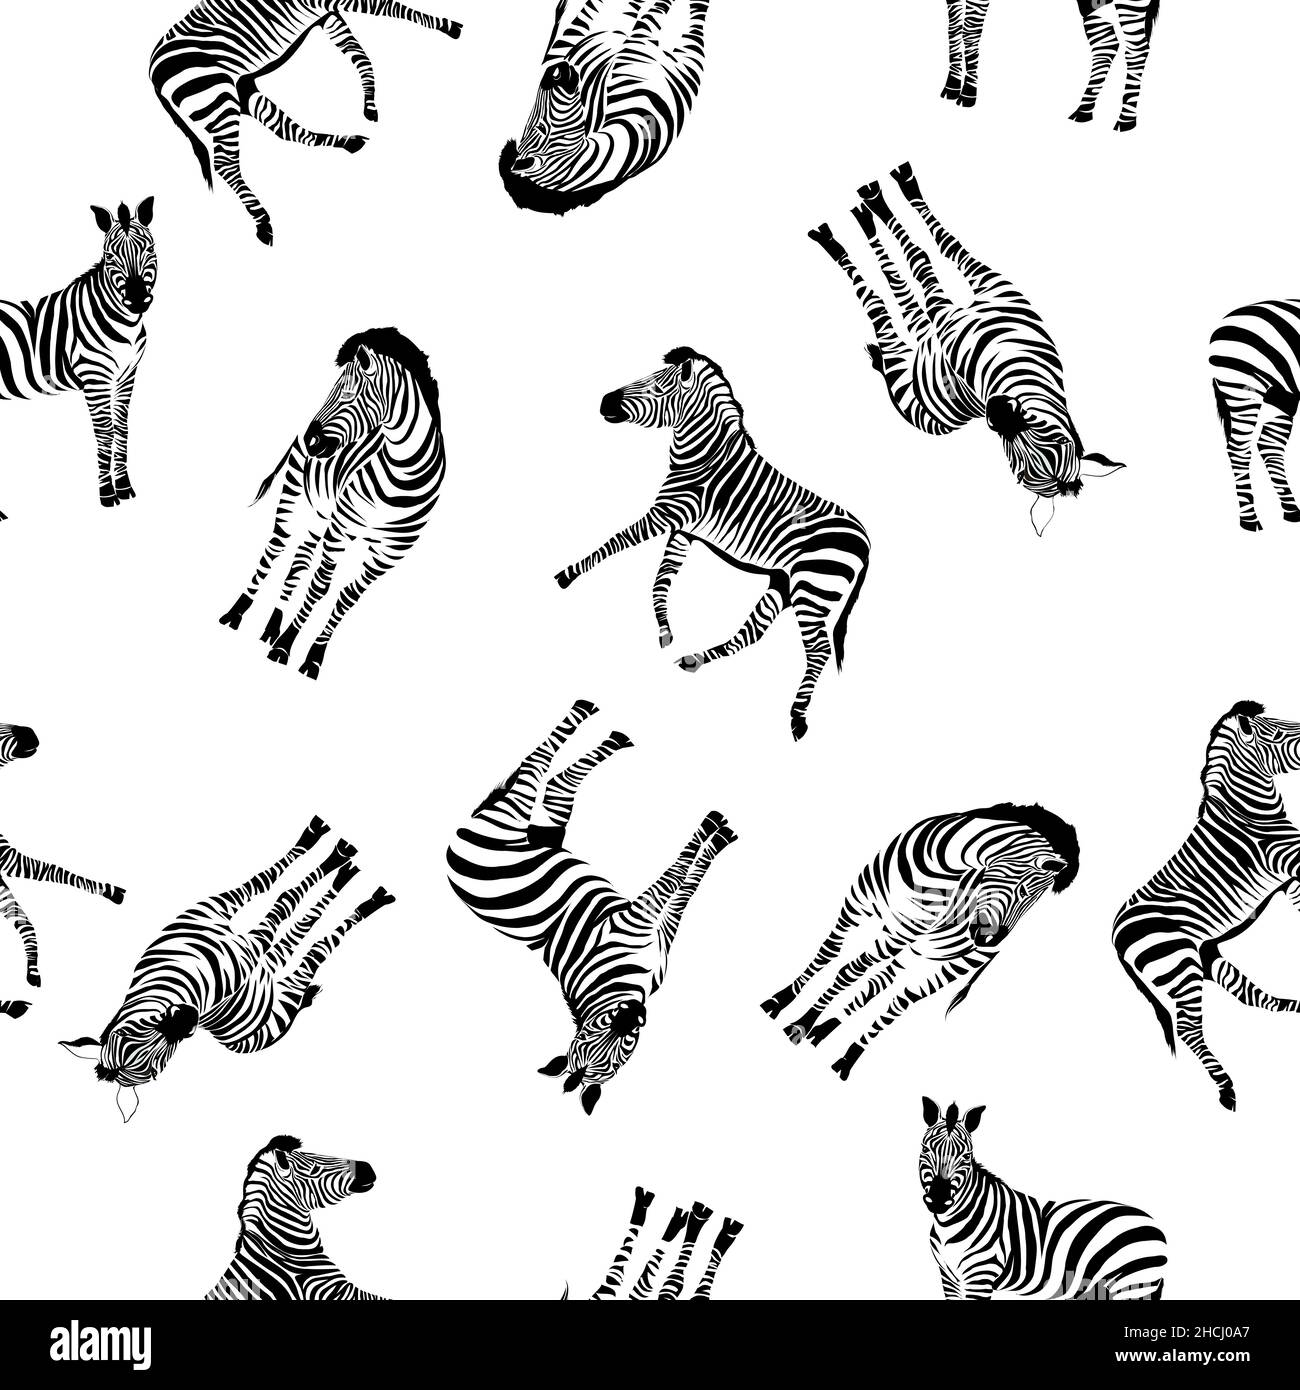 Zebramuster, Illustration, Tier mit dem Kopf eines Zebras. Flaches Zebra-Portrait für Karte, Plakat, Einladung, Buch, Poster, Notizbuch, Skizzenbuch. Stock Vektor